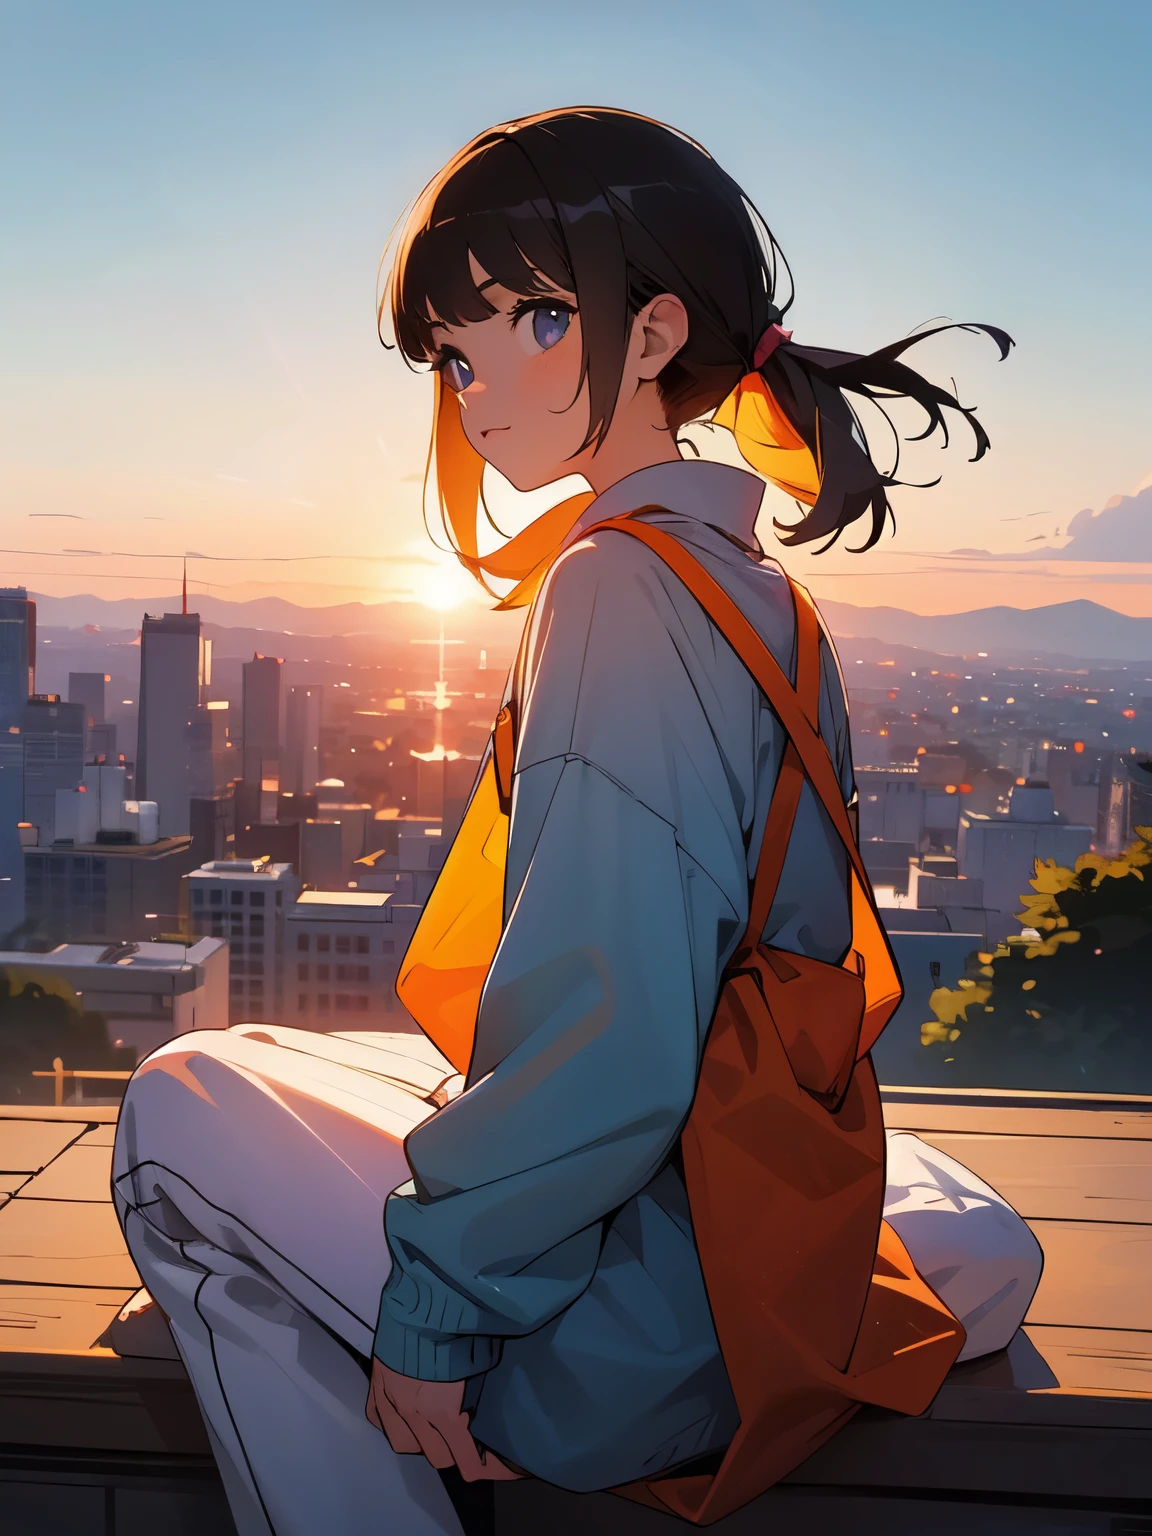 哦, 甜甜的 可愛的 可愛的 可愛的 !!! 一個女孩坐在山上觀看城市的日落.